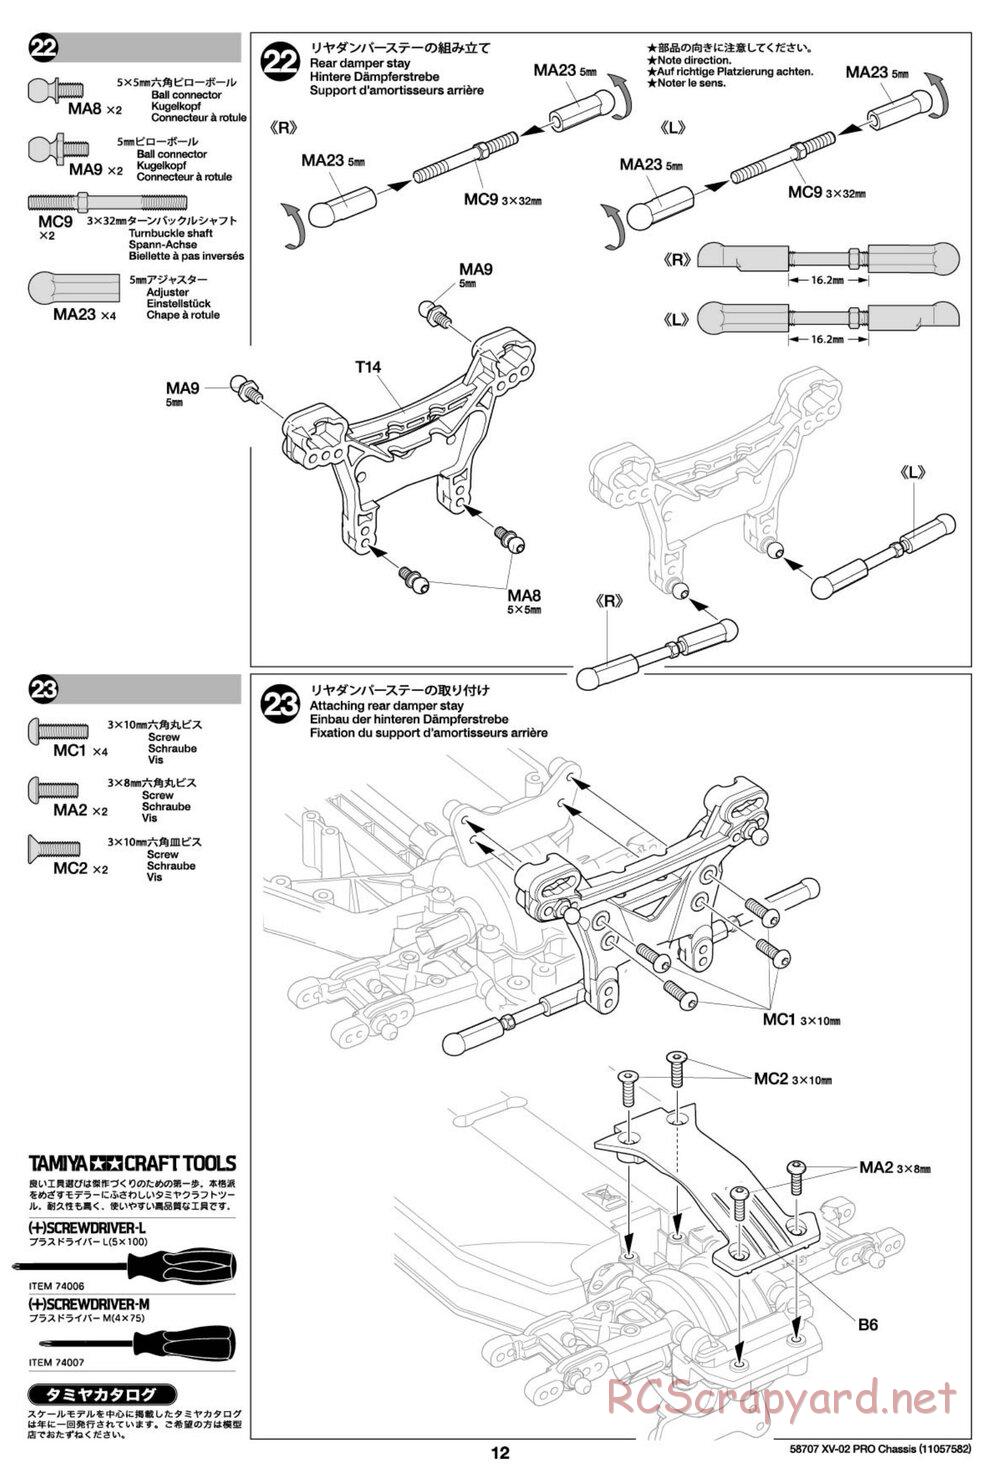 Tamiya - XV-02 Pro Chassis - Manual - Page 12